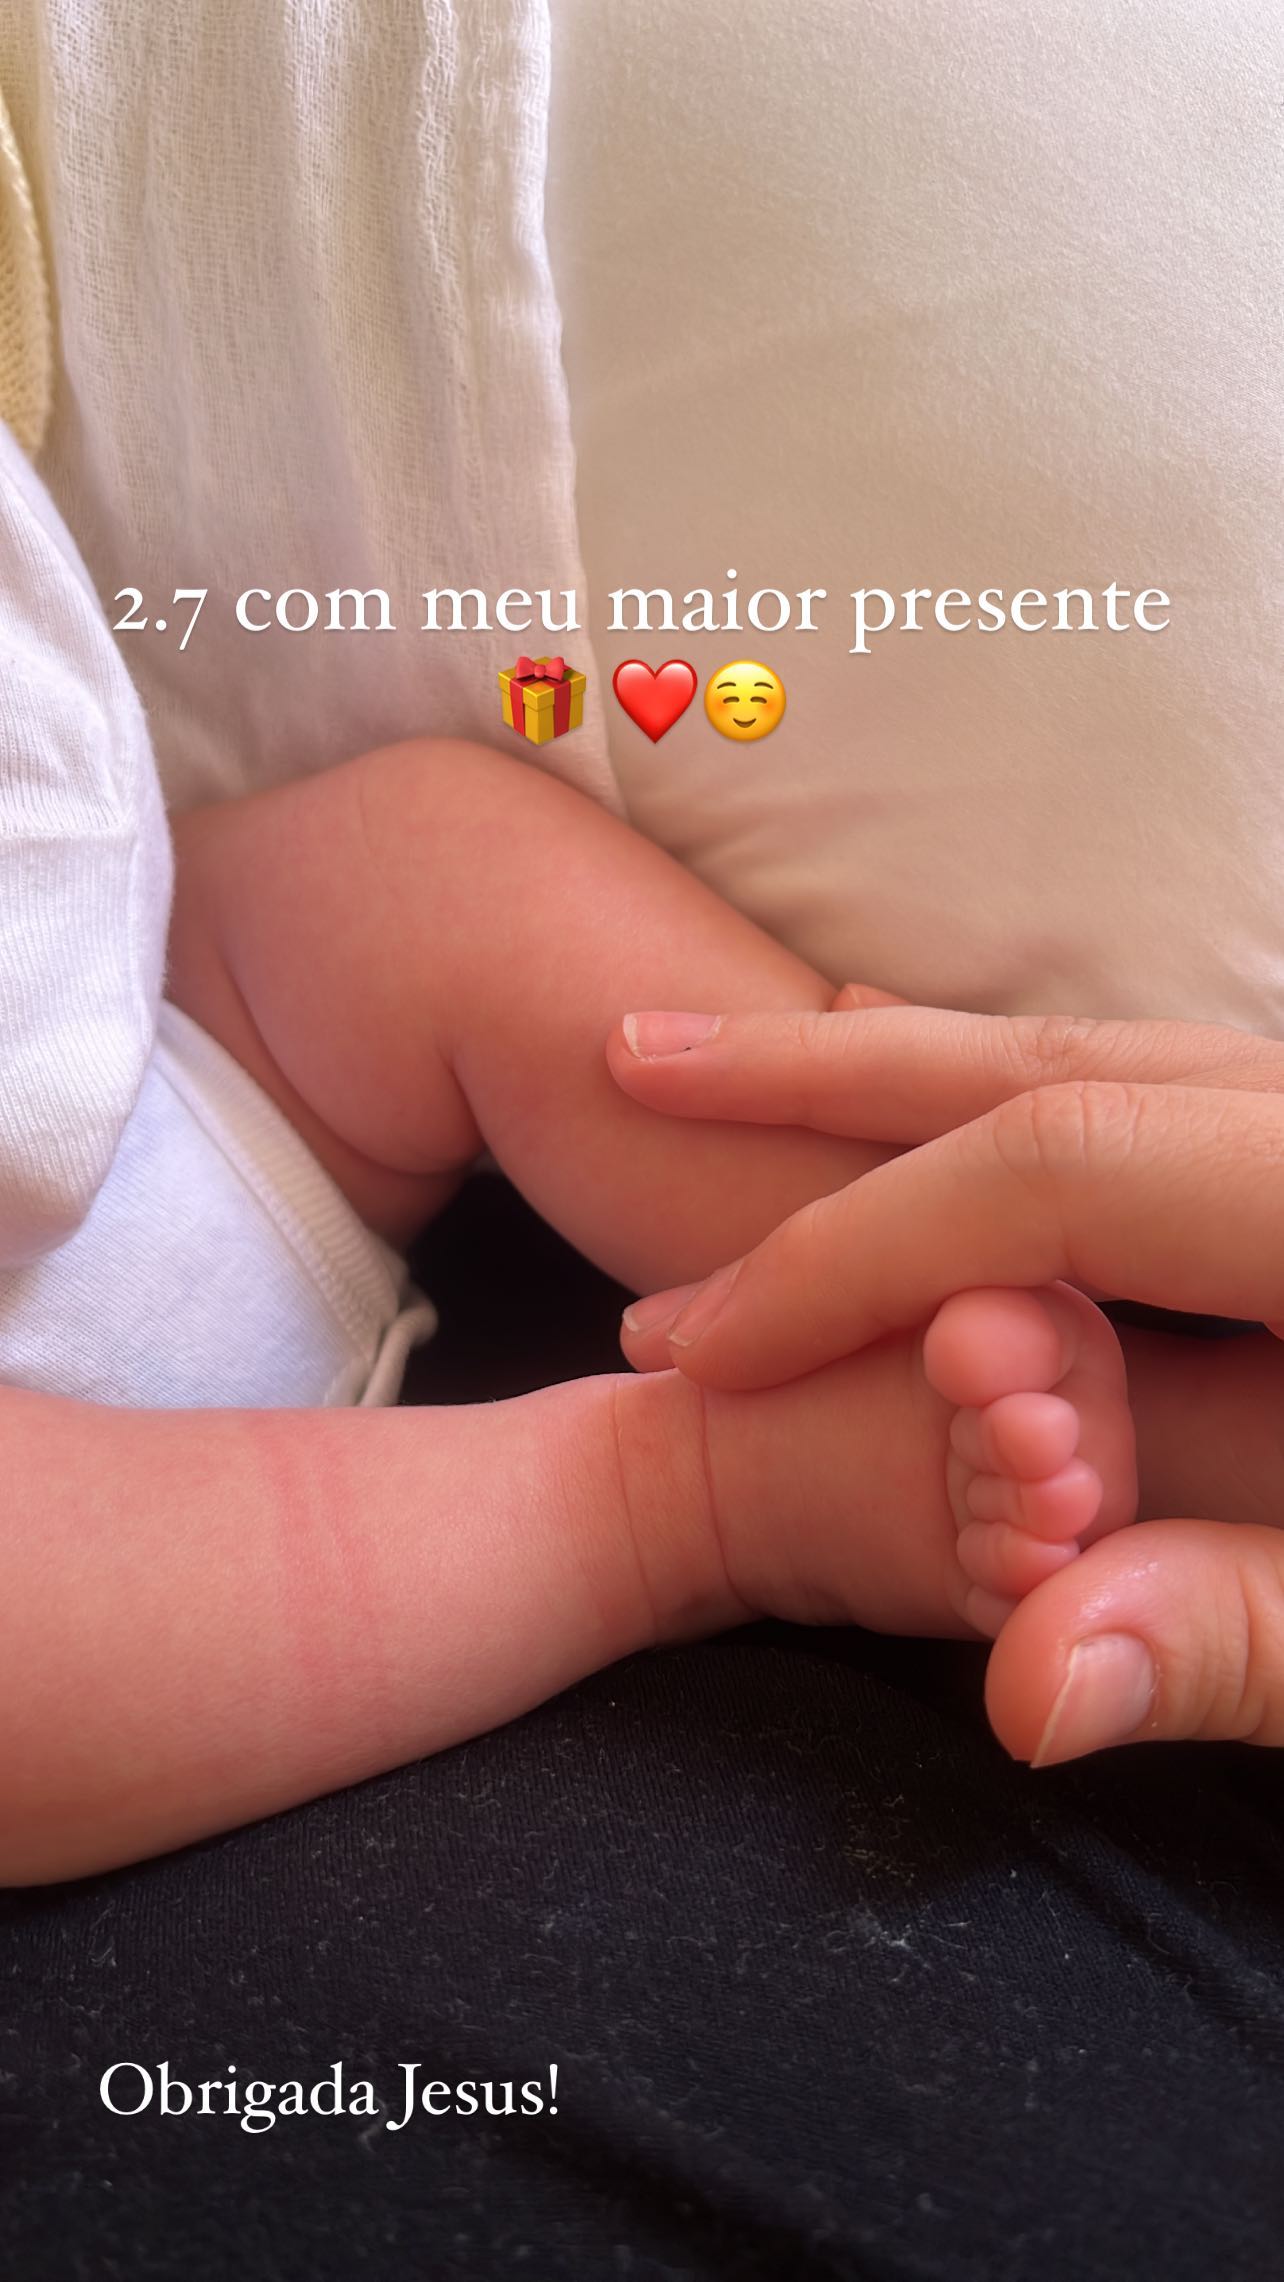 Lyandra Costa mostra clique inédito de filho recém-nascido: "Maior presente"